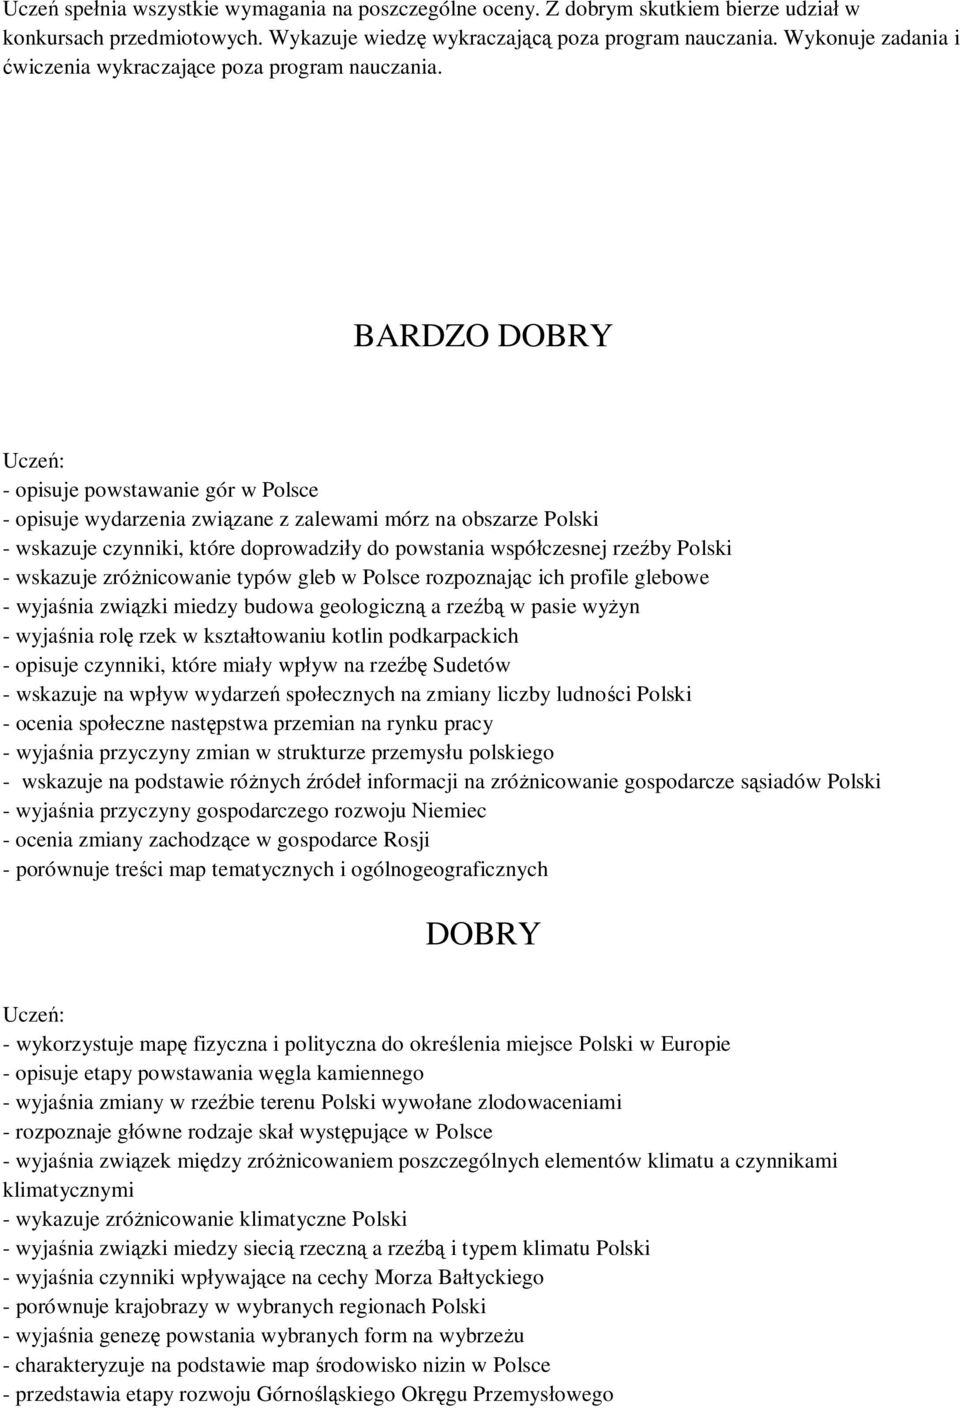 BARDZO DOBRY - opisuje powstawanie gór w Polsce - opisuje wydarzenia związane z zalewami mórz na obszarze Polski - wskazuje czynniki, które doprowadziły do powstania współczesnej rzeźby Polski -